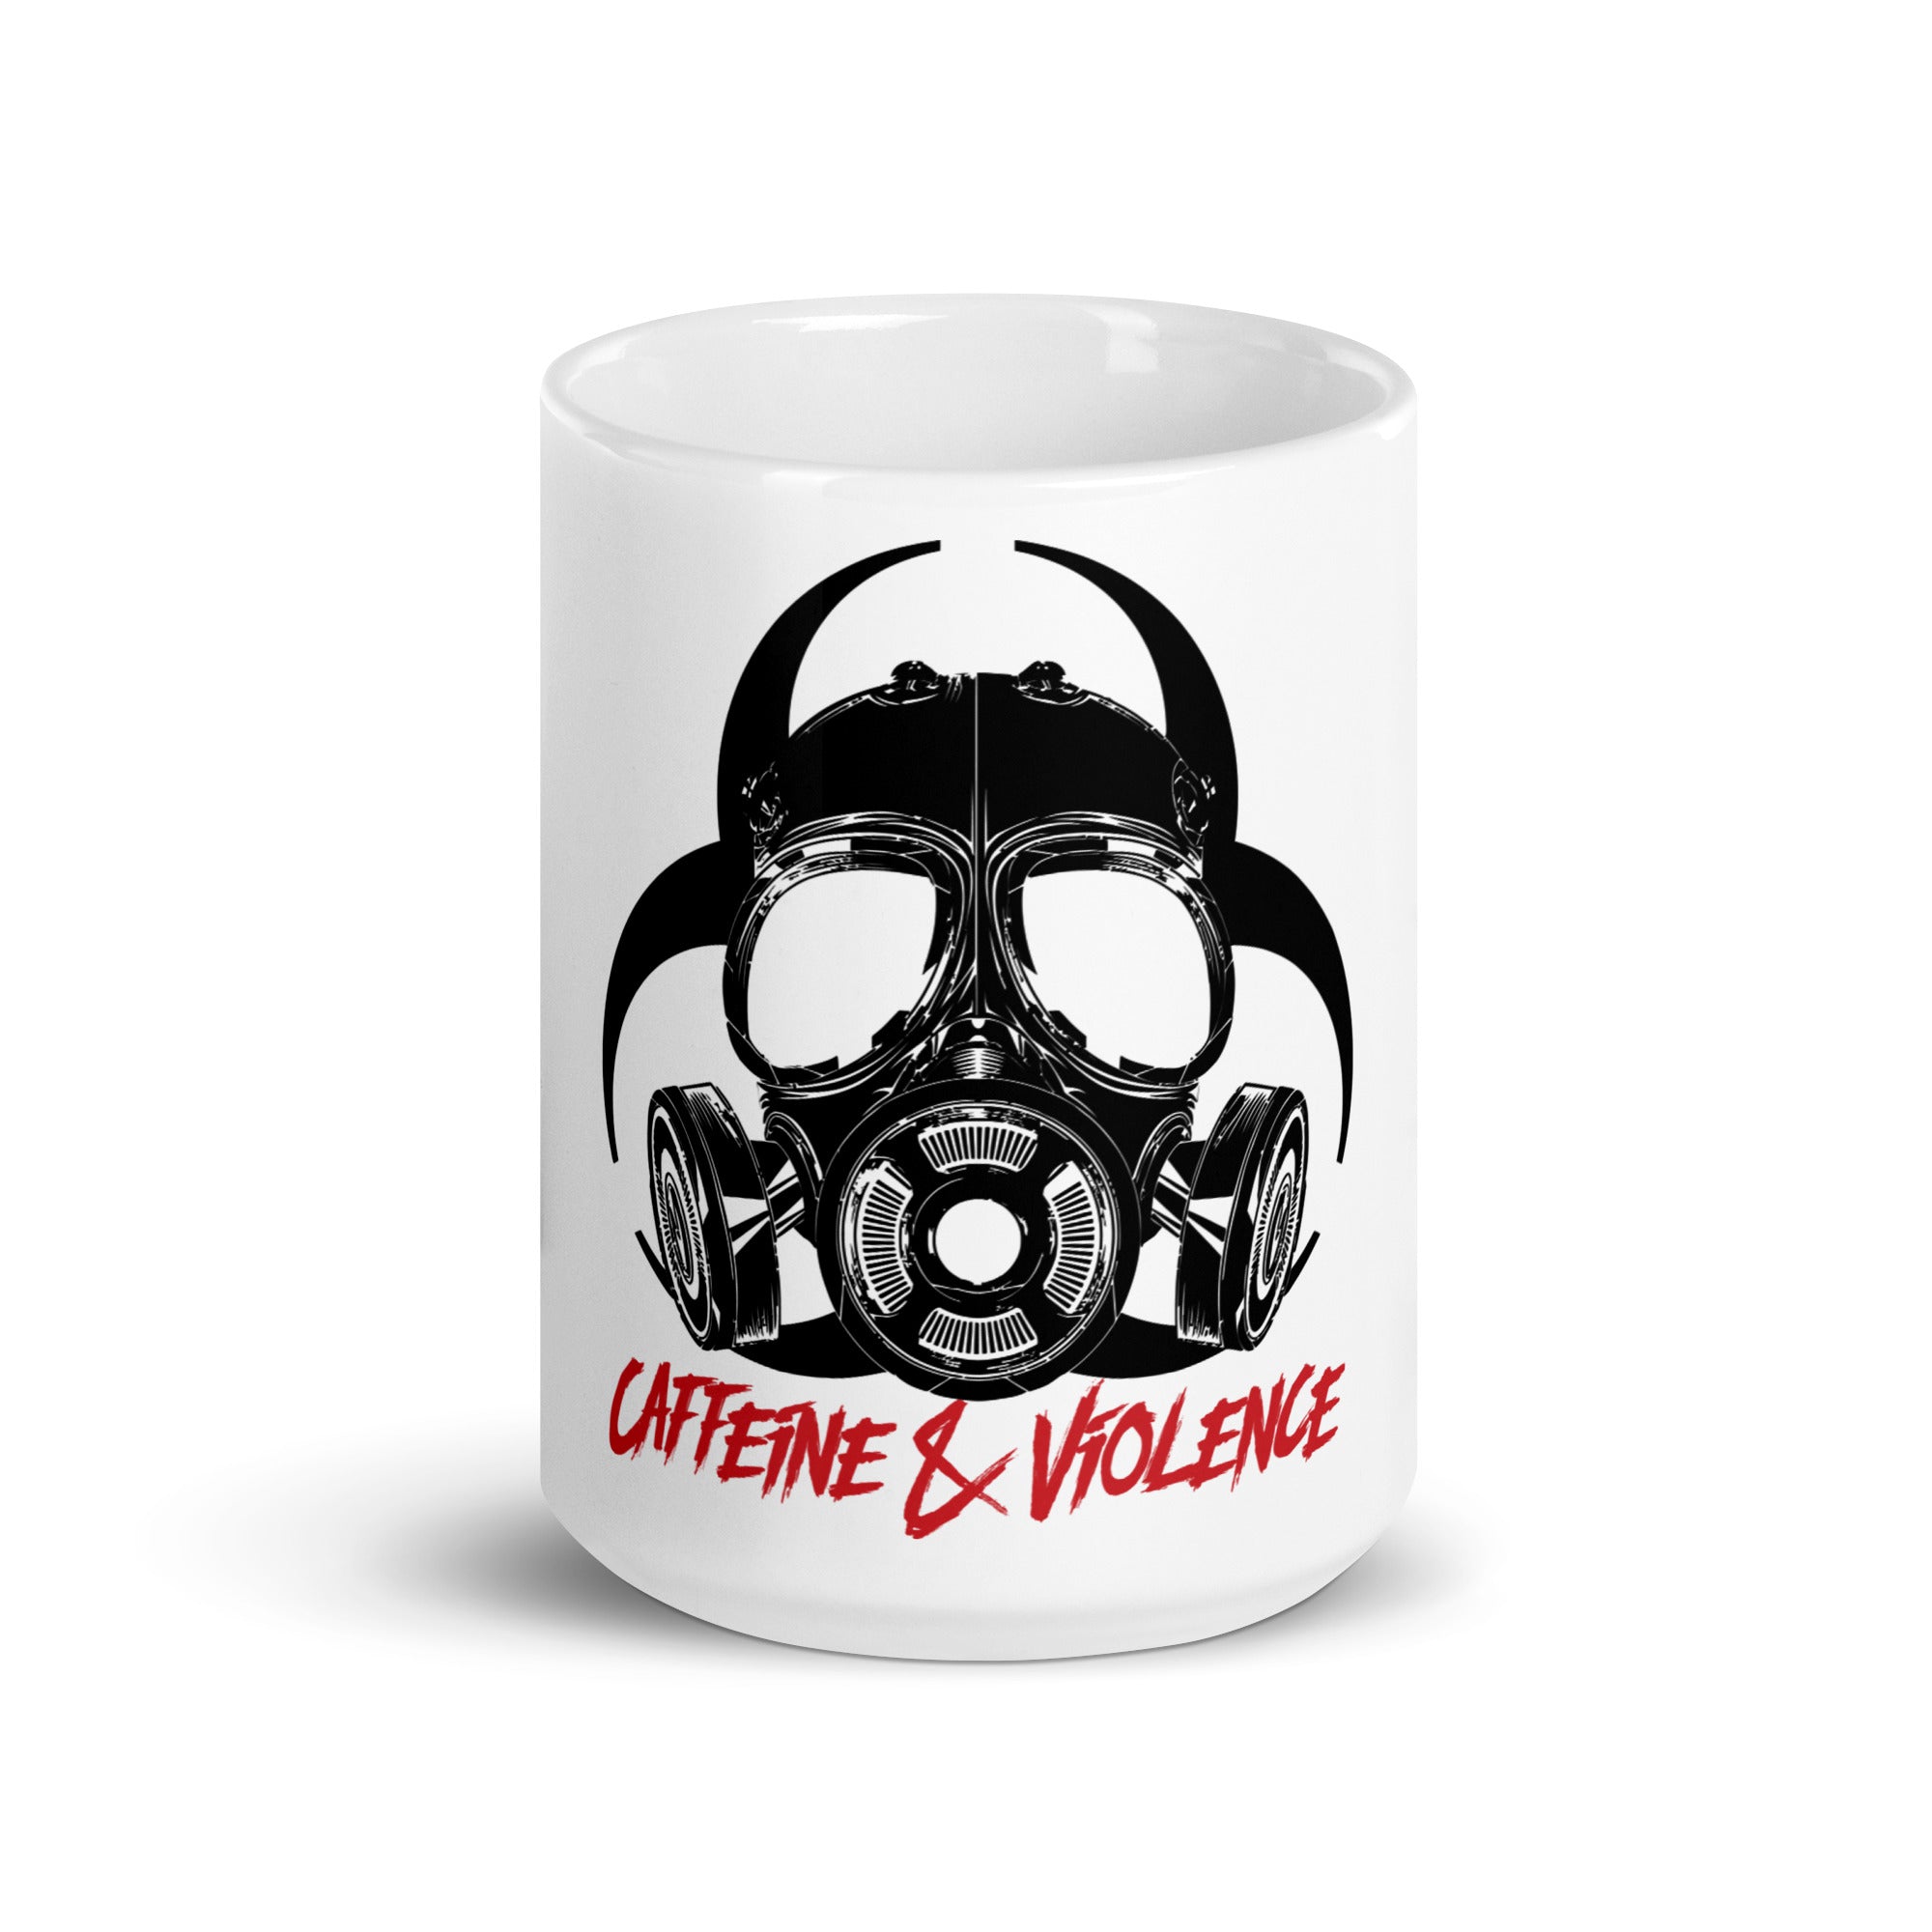 Caffeine & Violence White Mug